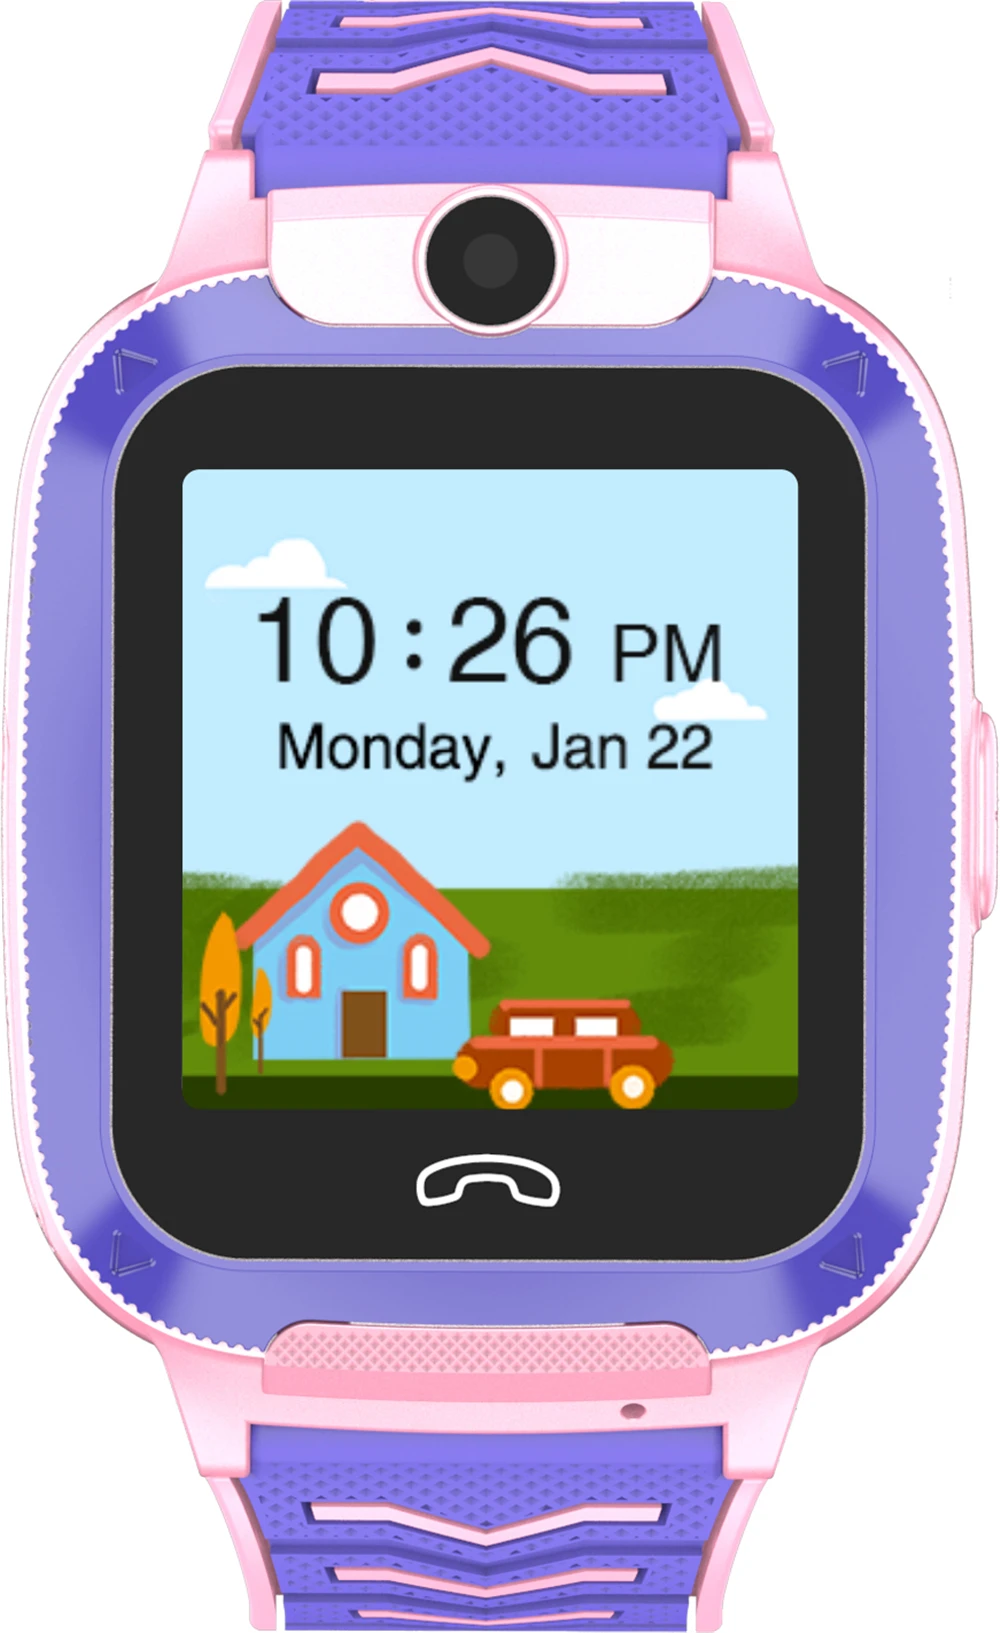 4G Детские умные часы 4g видео телефон часы gps Smartwatch SOS Вызов Smartwatch дети IP67 водонепроницаемые детские часы время gps трекер